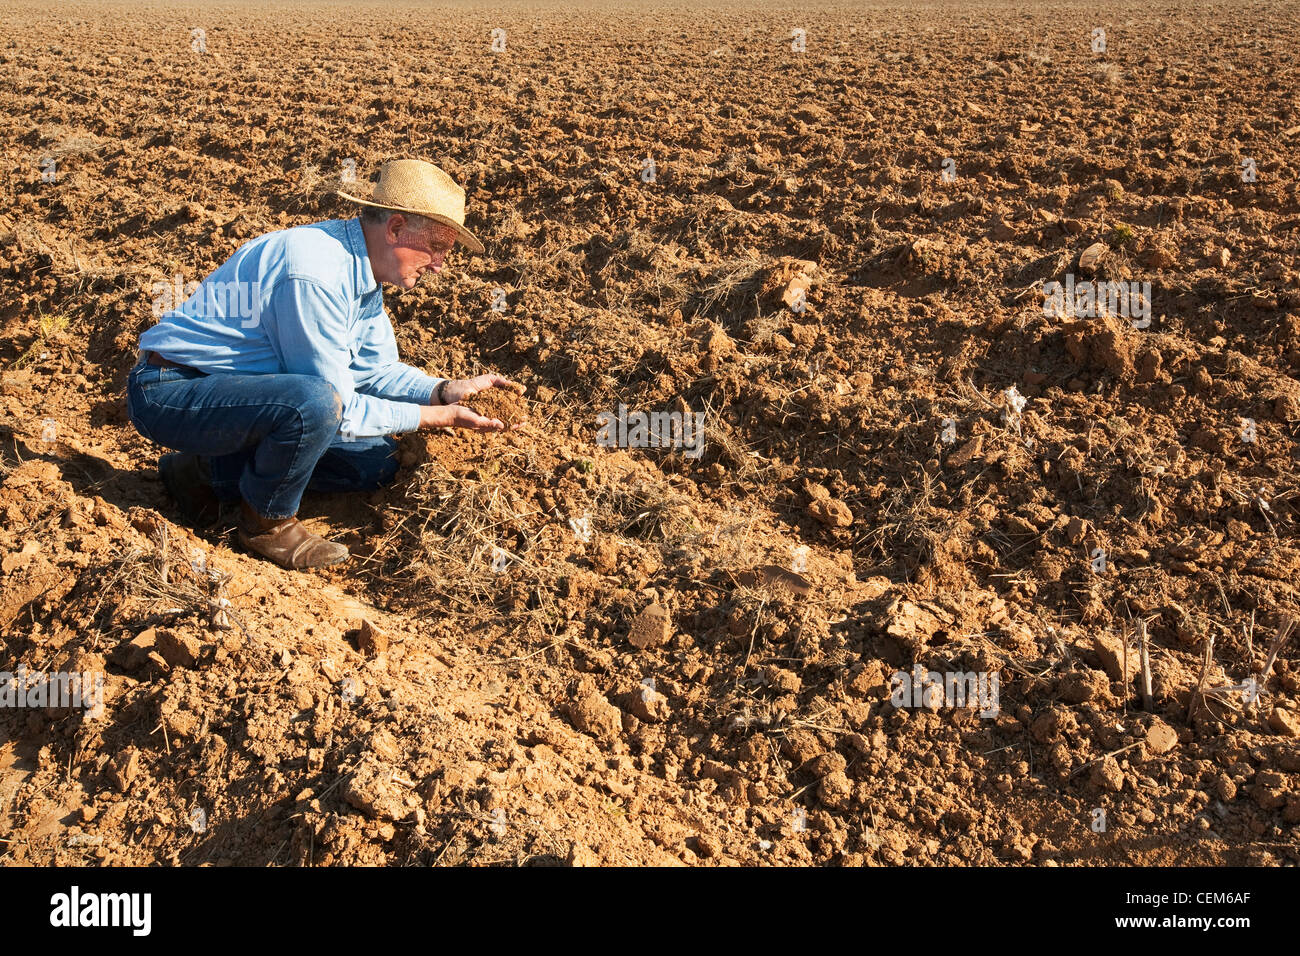 Agricoltura - un agricoltore (coltivatore) esamina bedded terra che sarà piantato al cotone nei prossimi mesi / Inghilterra, Arkansas. Foto Stock